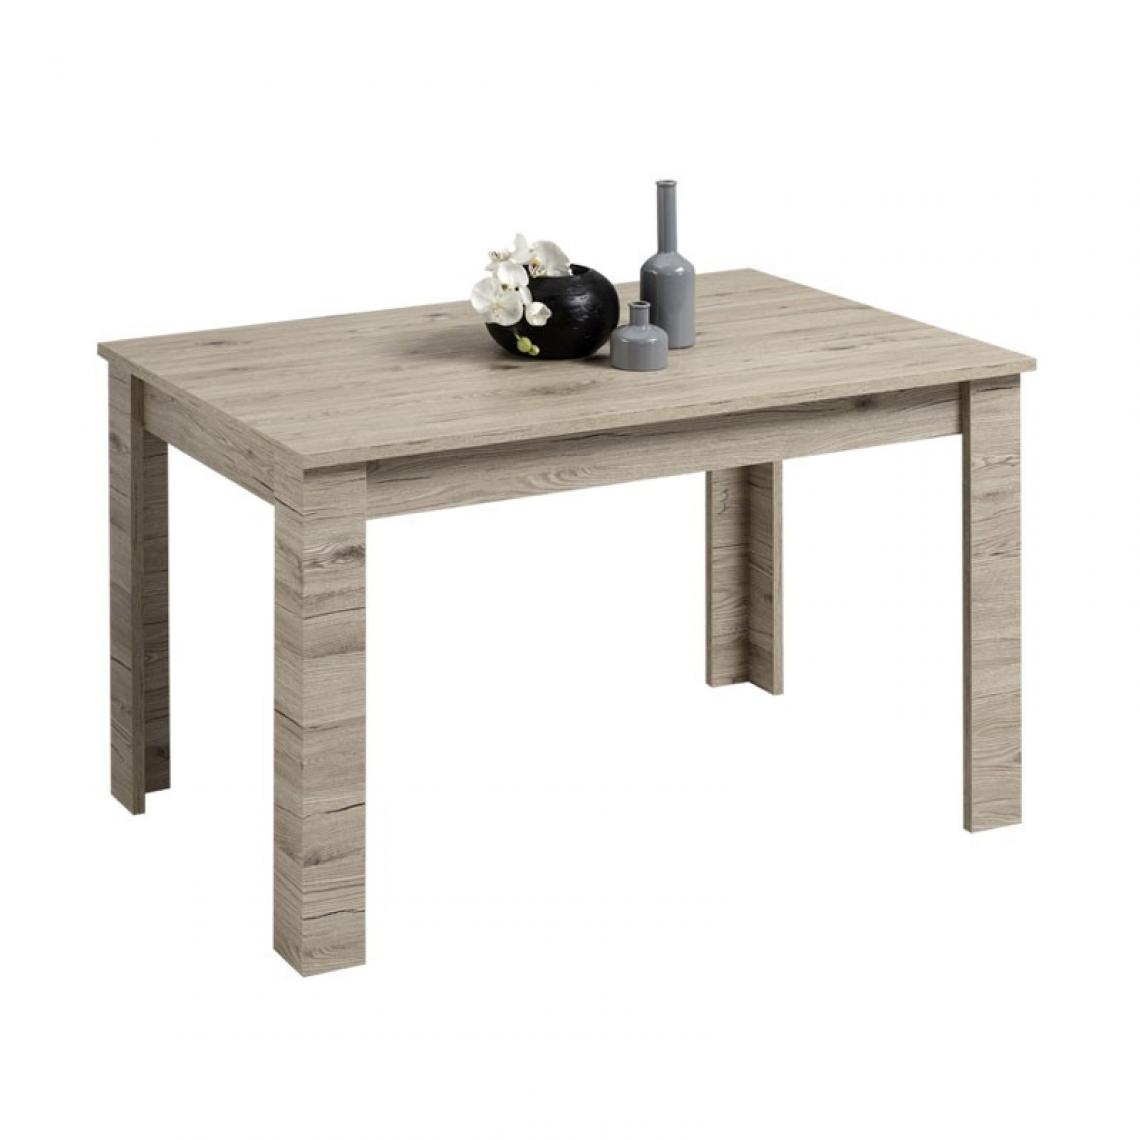 Webmarketpoint - Table à rallonges en bois mélaminé chêne bordeaux 120x80xh 76 cm - Tables à manger